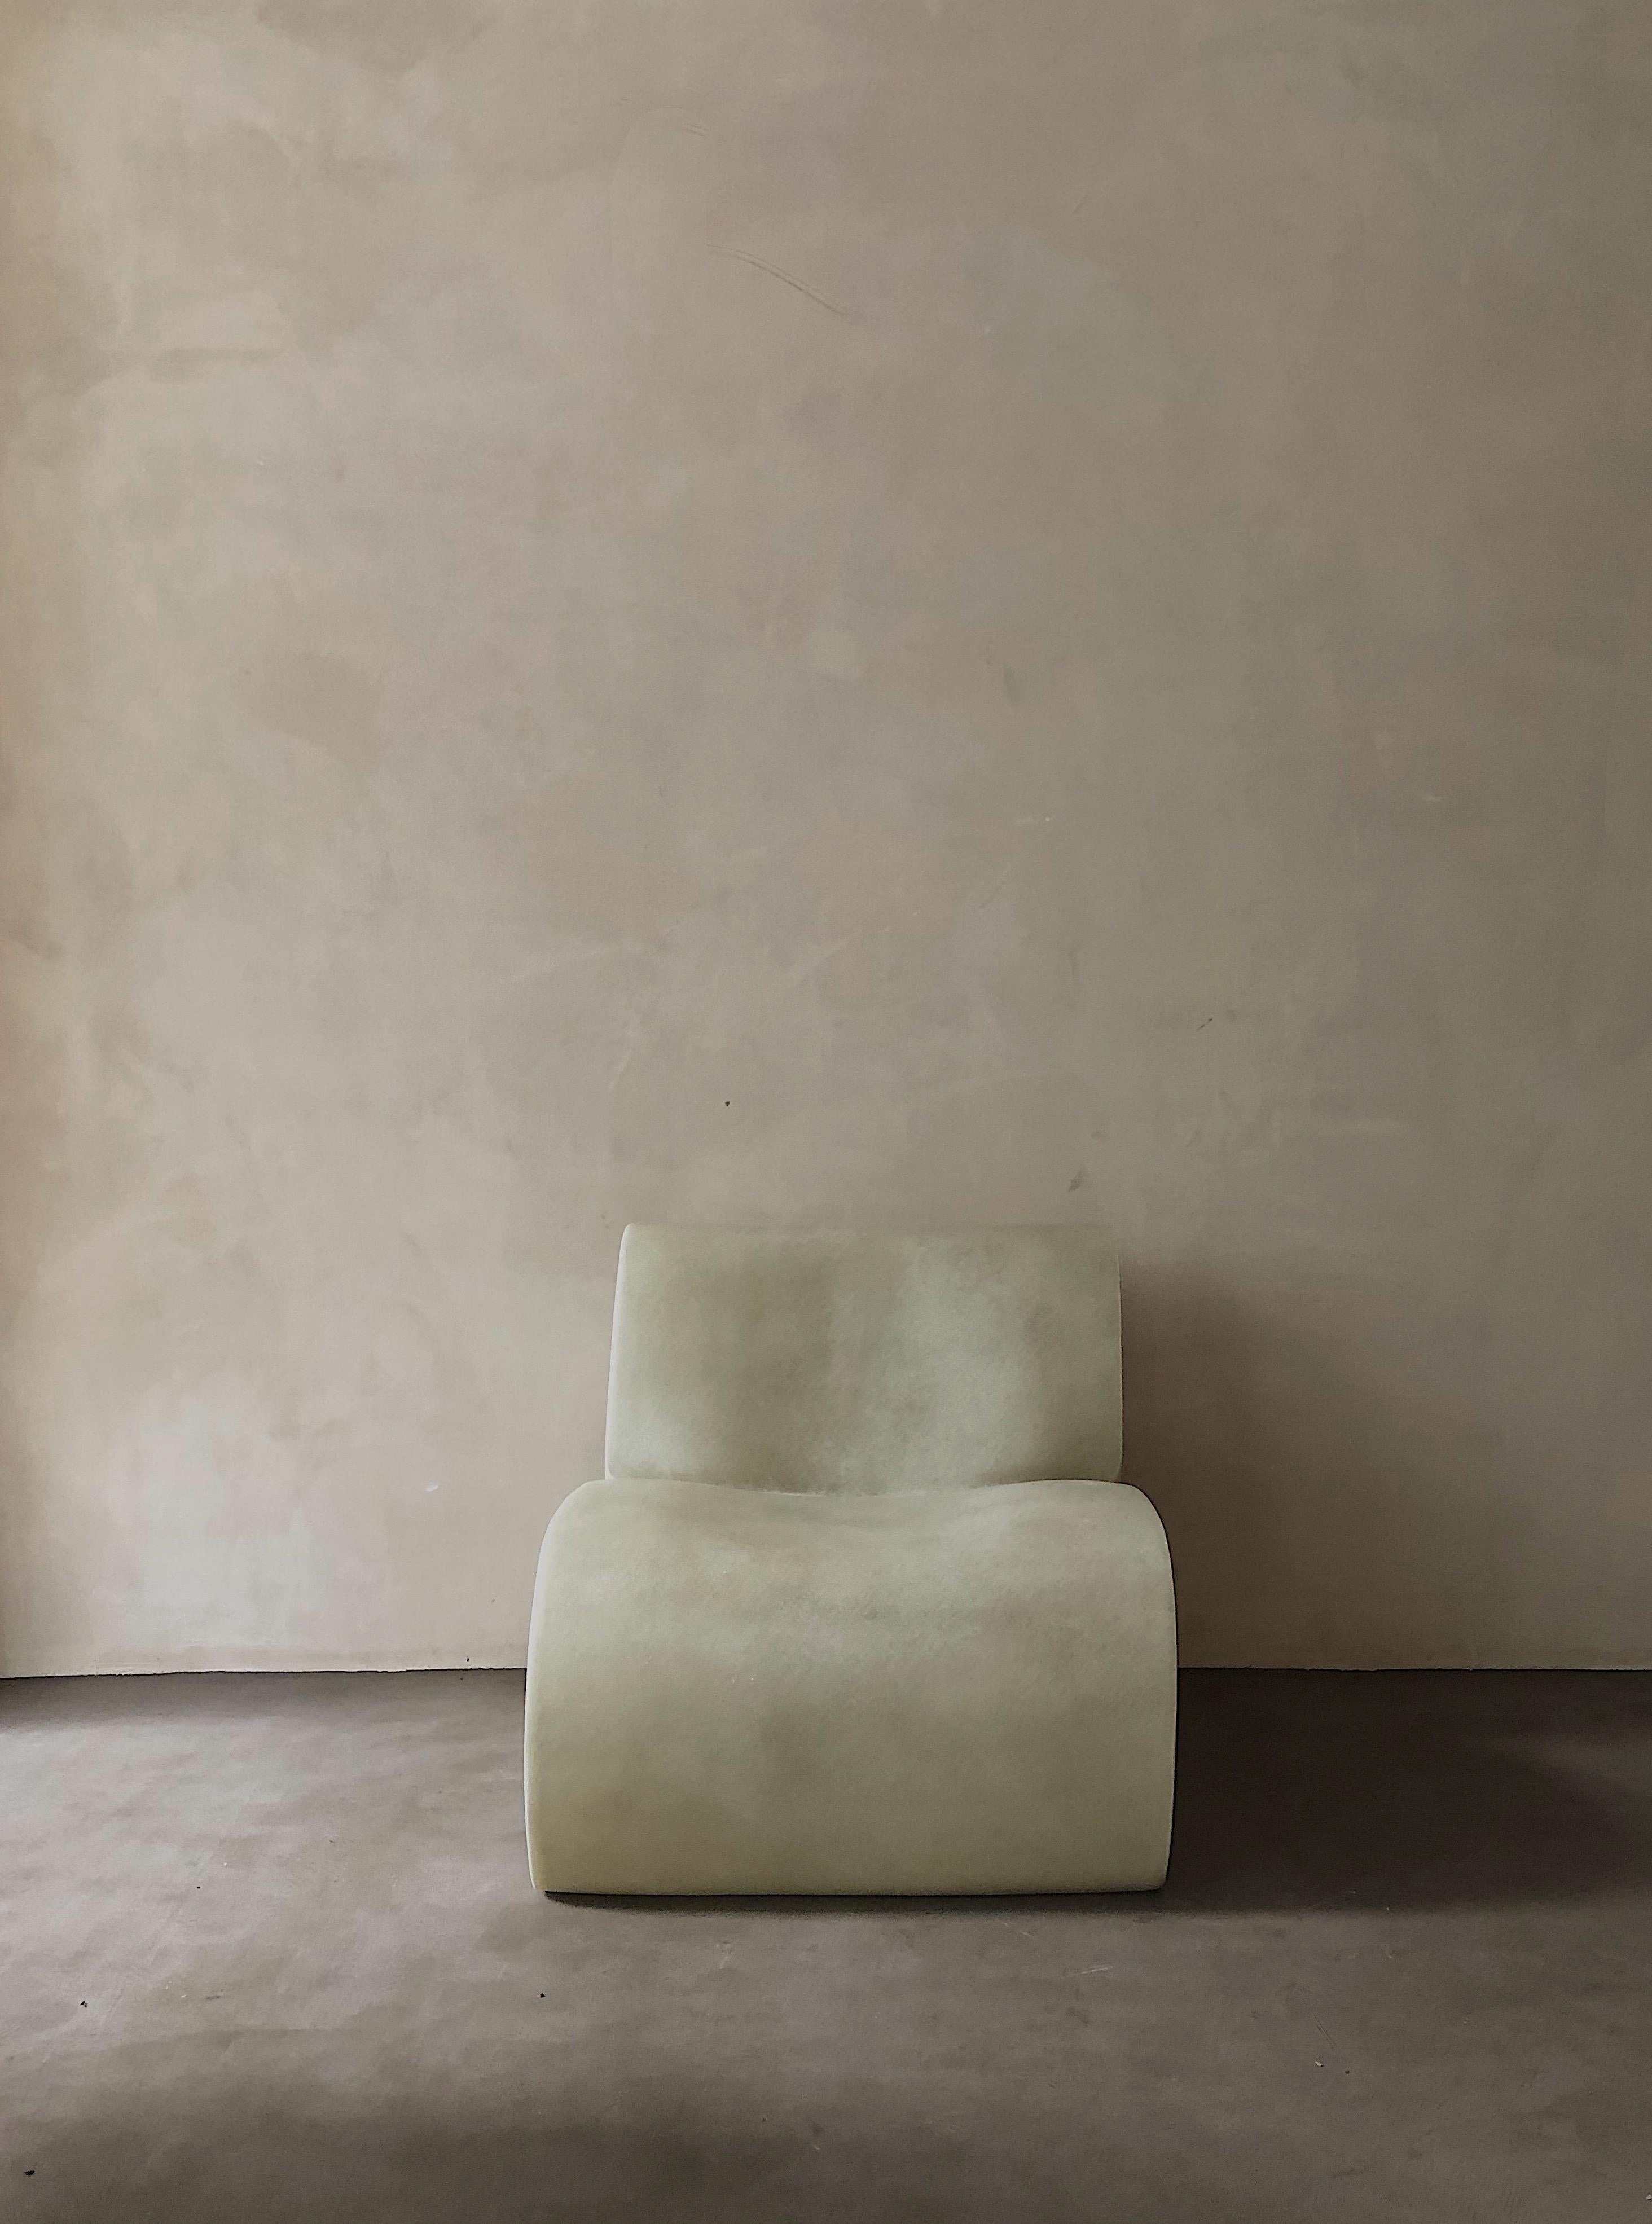 Chaise longue curl up blanche de kar
Matériaux : PRF.
Dimensions : 63 x 84 x 66 cm : 63 x 84 x 66 cm.

*Cette pièce peut être utilisée à l'extérieur.

Il se forme en position Up&Up, décontracté en attendant d'être retenu. Le côté conçu comme une